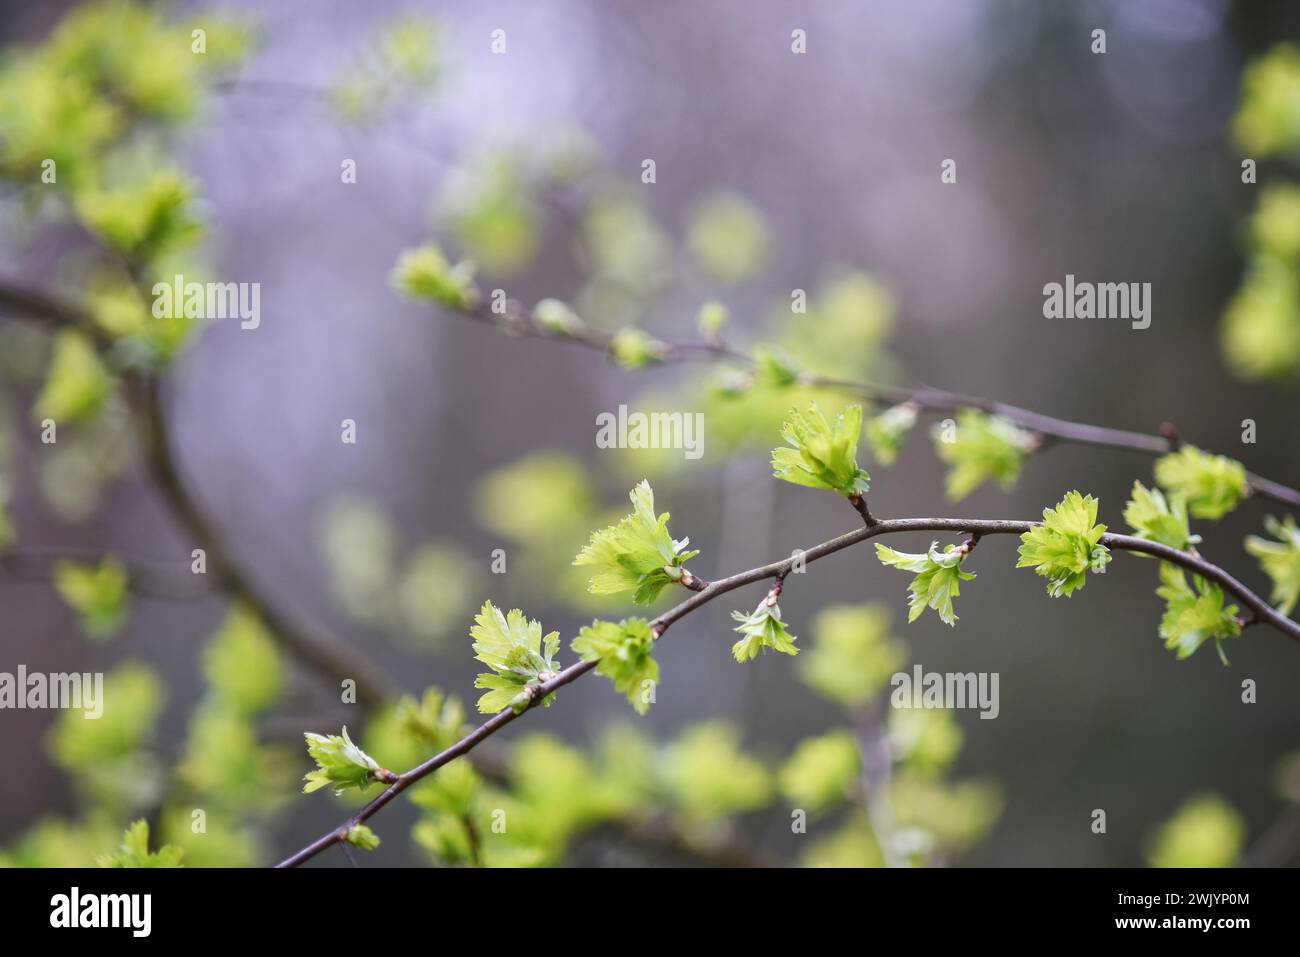 De nouvelles feuilles sur un buisson, photographiées au printemps sur un fond naturel flou, symbole d’une nouvelle vie ou de nouveaux débuts. Banque D'Images